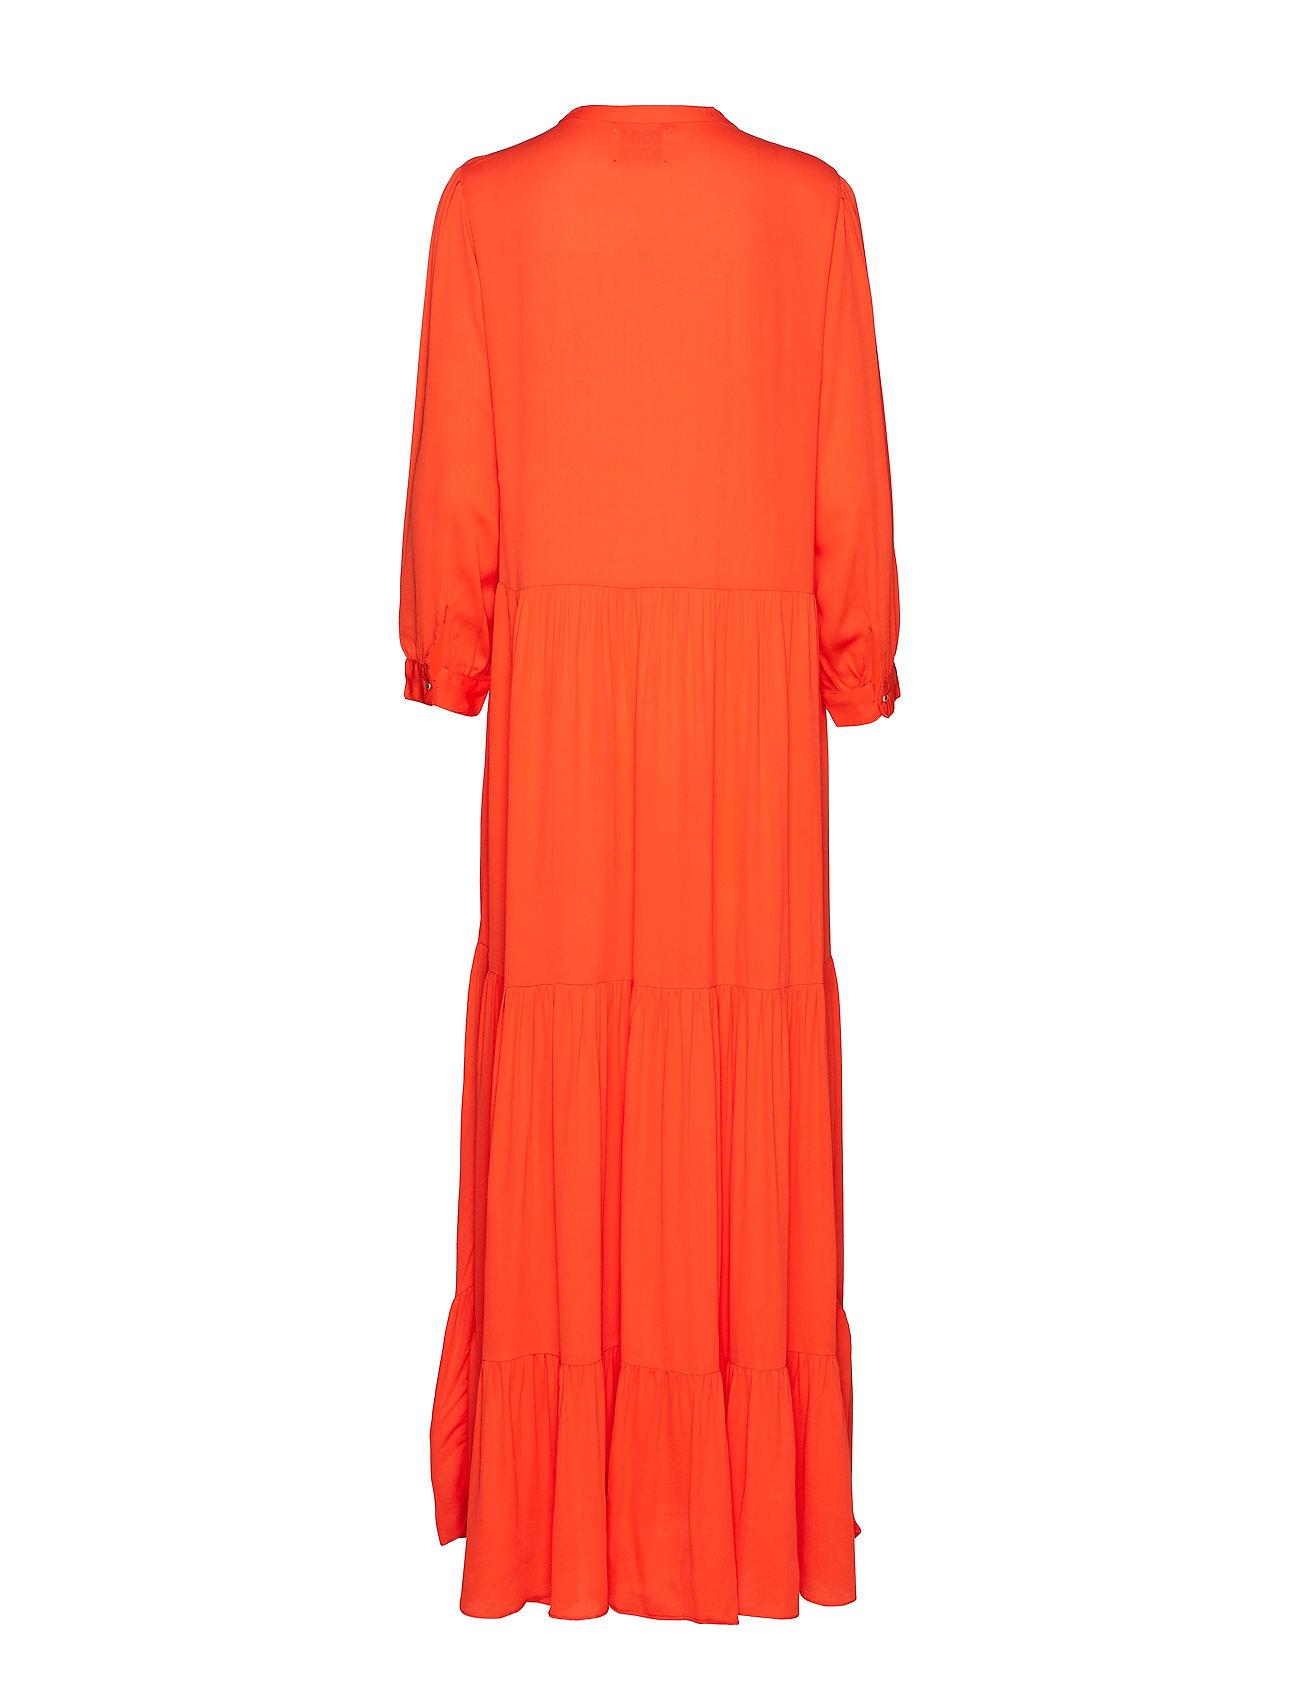 Lolly's Laundry maxikjoler – Nee Dress Maxikjole Festkjole Orange ...